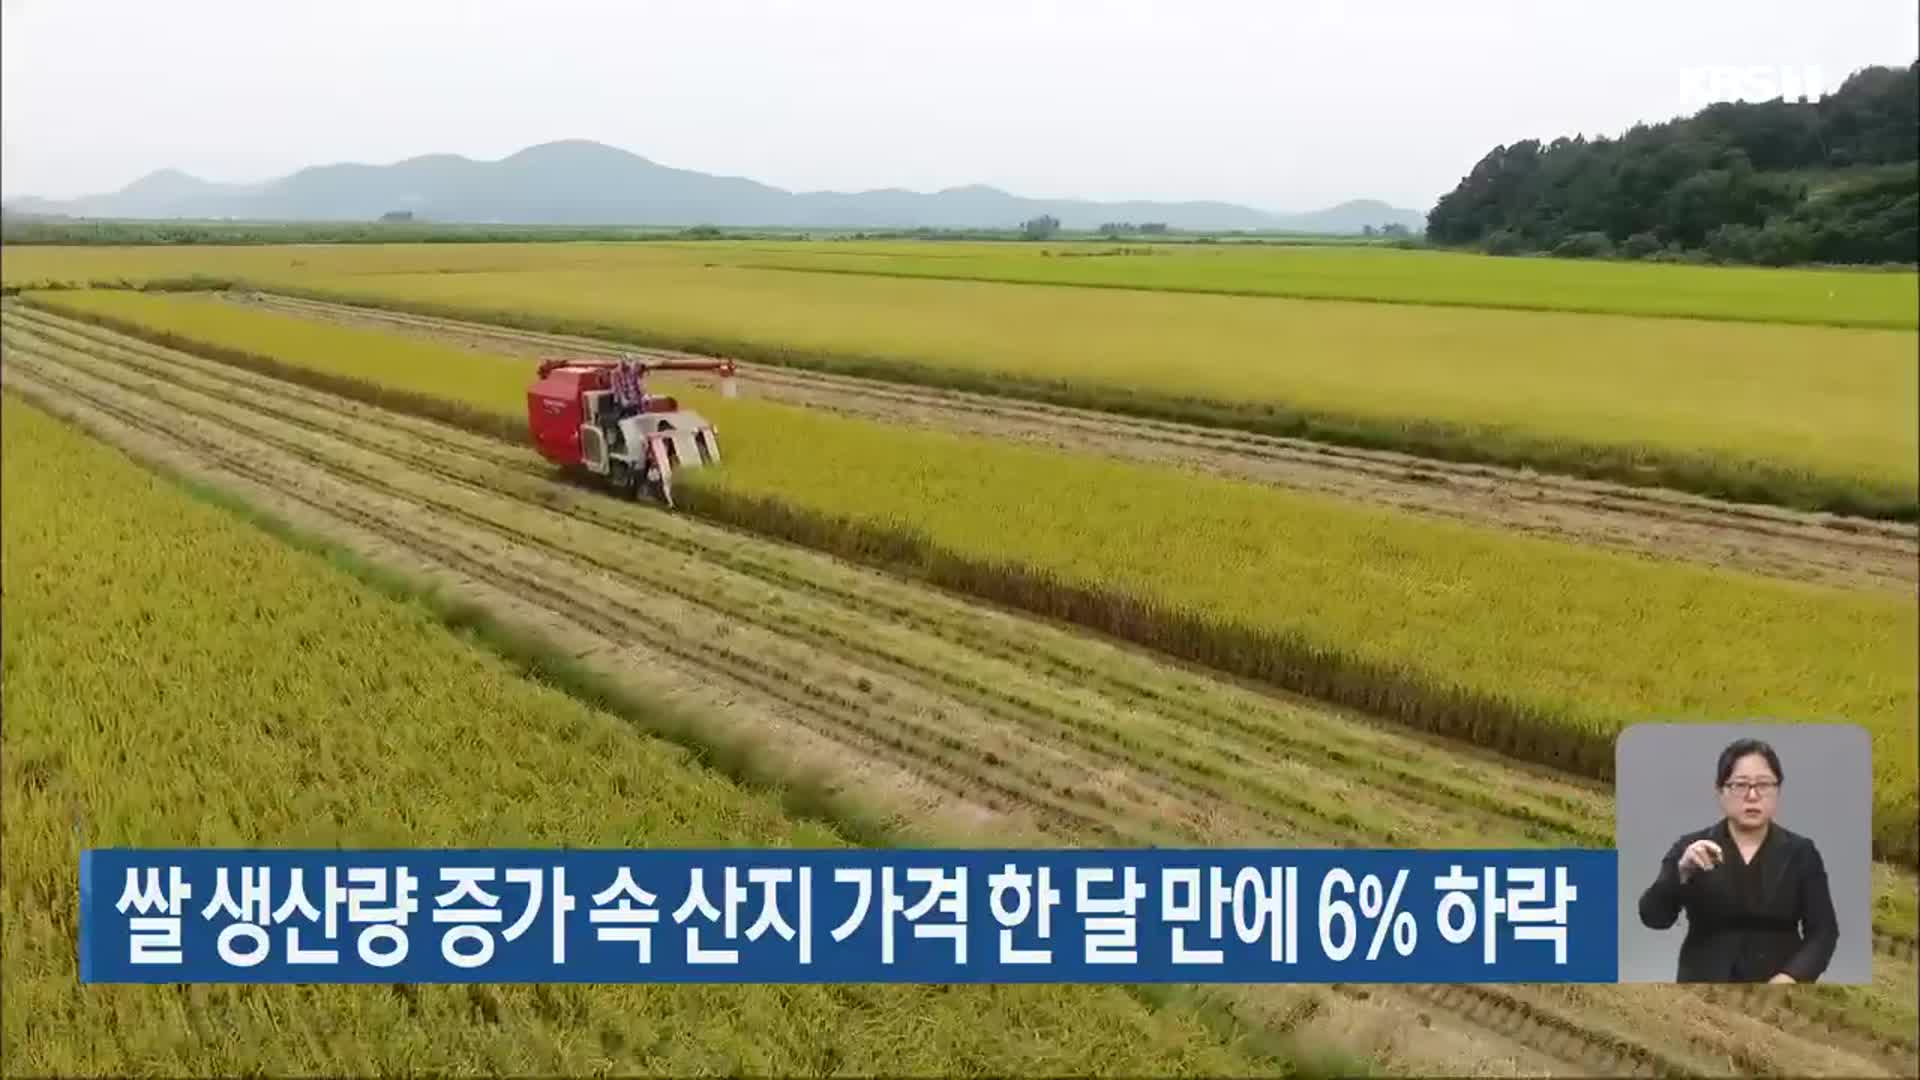 쌀 생산량 증가 속 산지 가격 한 달 만에 6% 하락